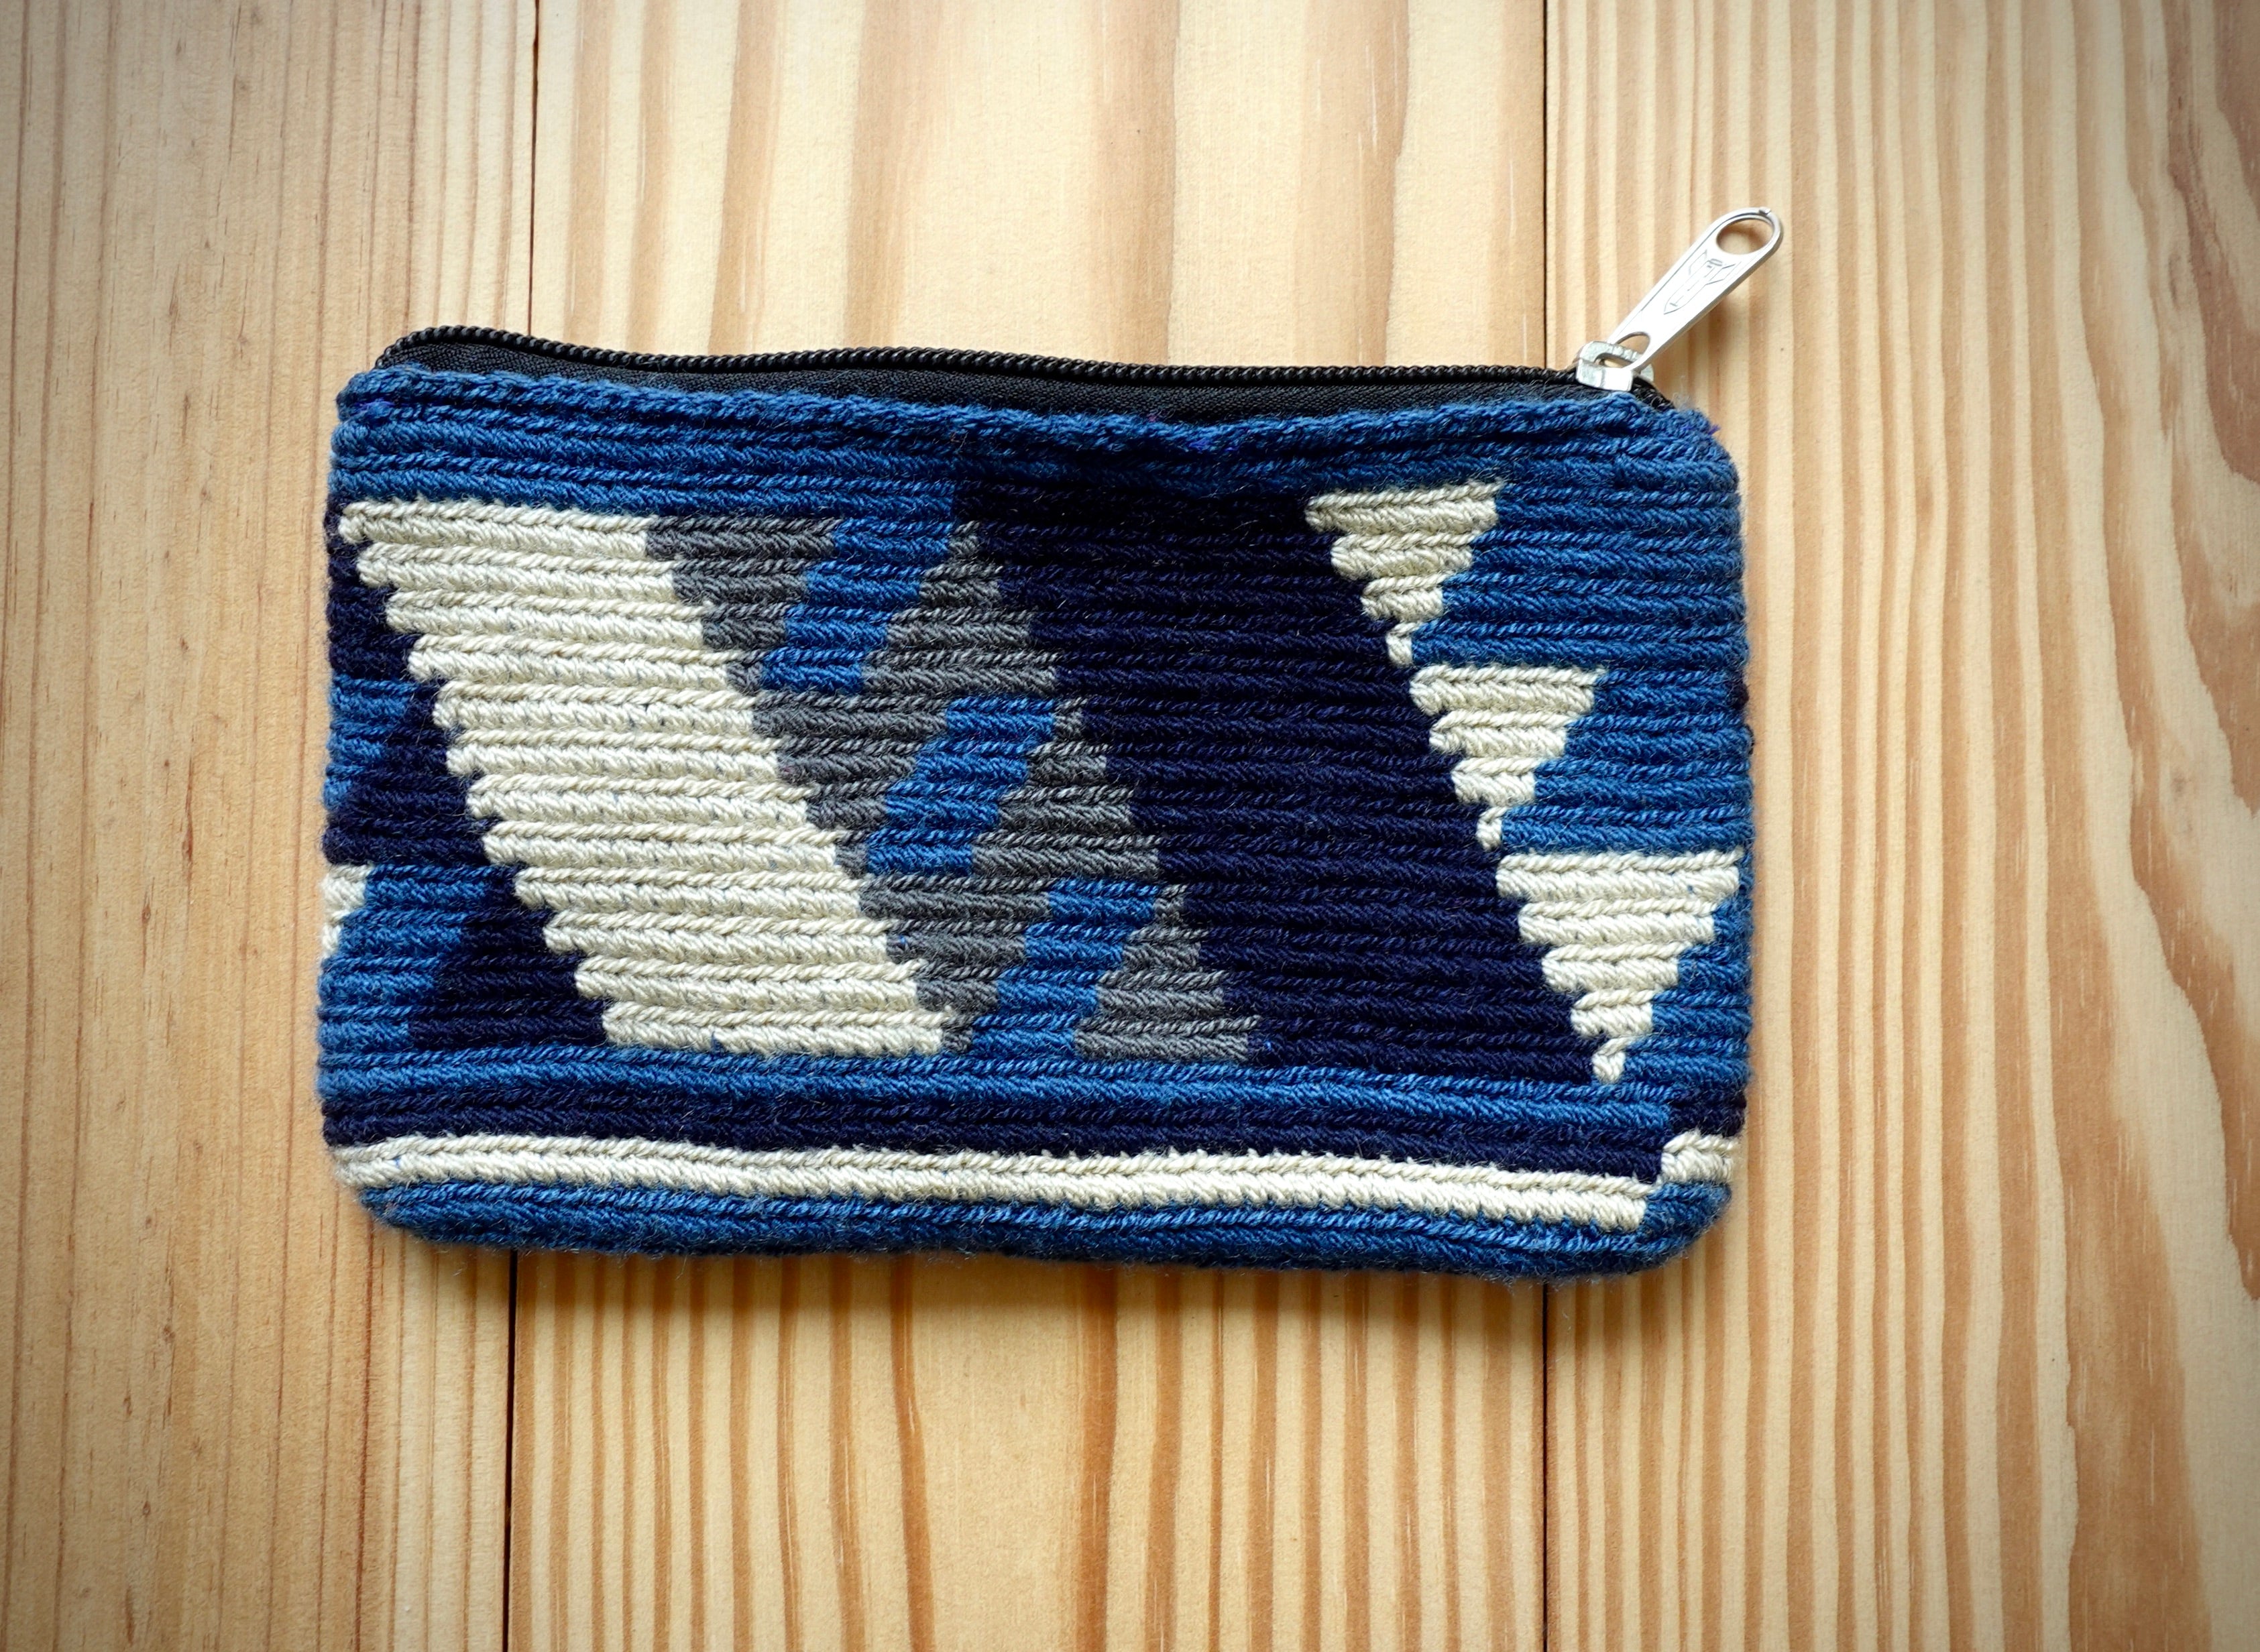 Pozoeroquí Wayuu Handmade Wristlet Clutch, Small